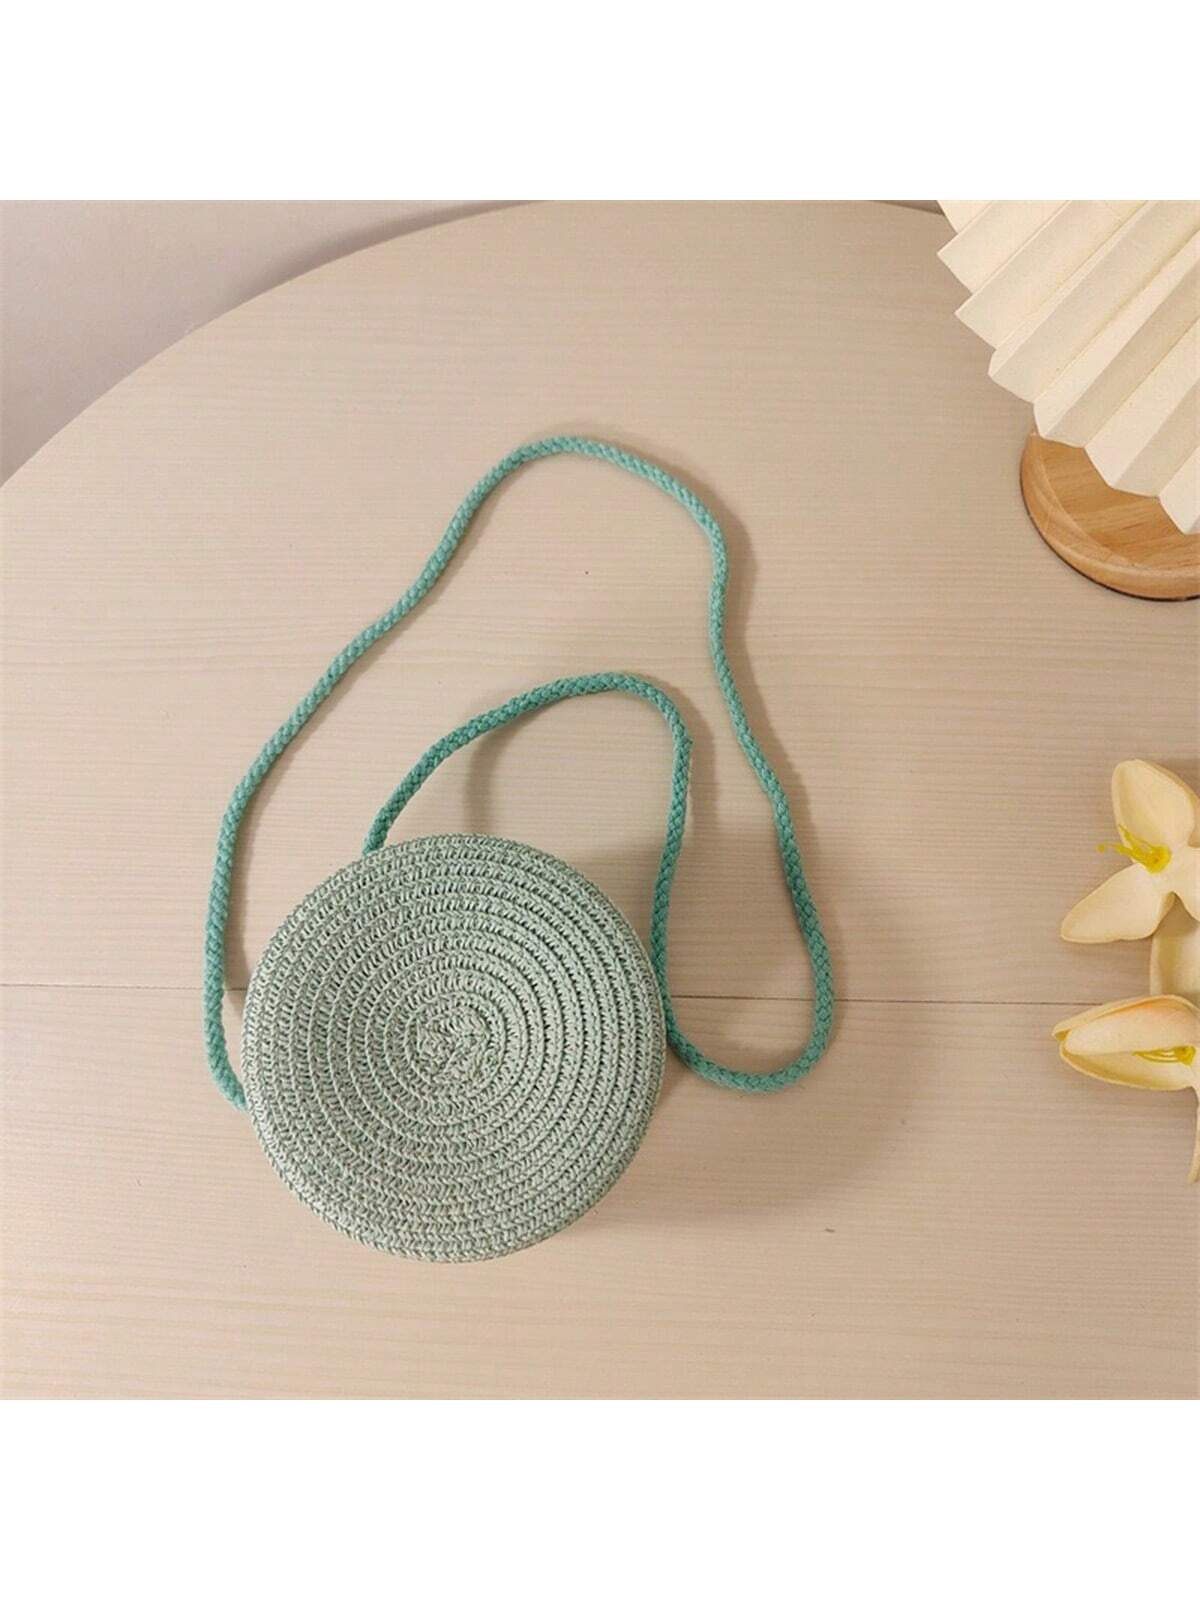 Мини-минималистичная соломенная сумка Простая круглая соломенная сумка, мятно-зеленый соломенная сумка с нашивками отпуск бежевый